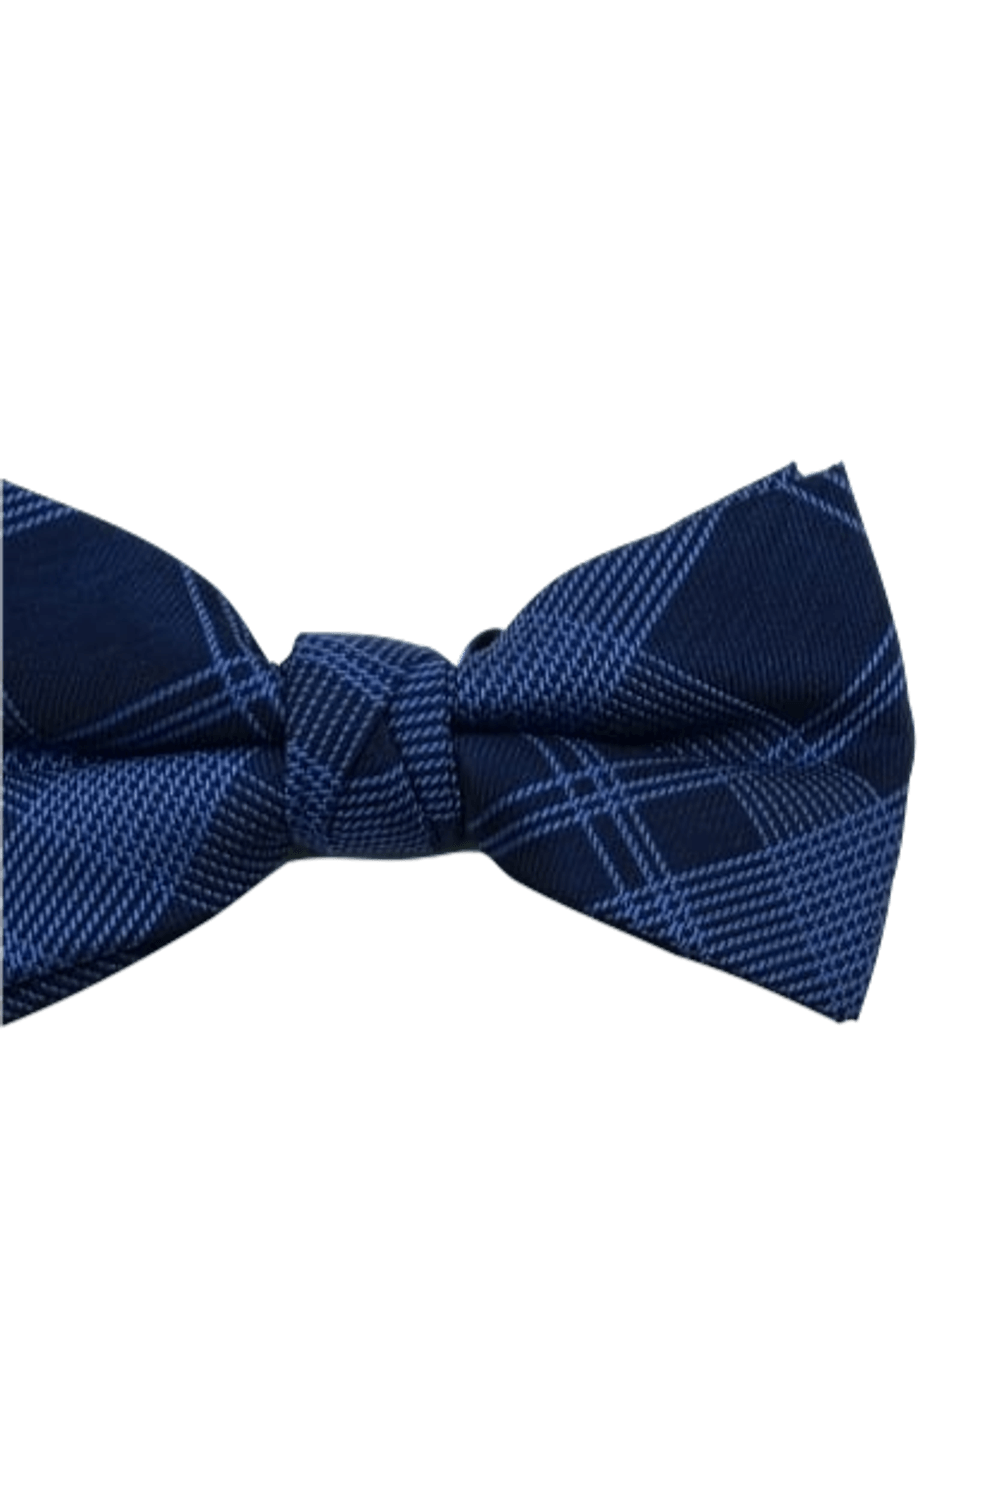 Gravata-Borboleta-xadrez-marinho-com-azul-celeste-tecido-em-poliester